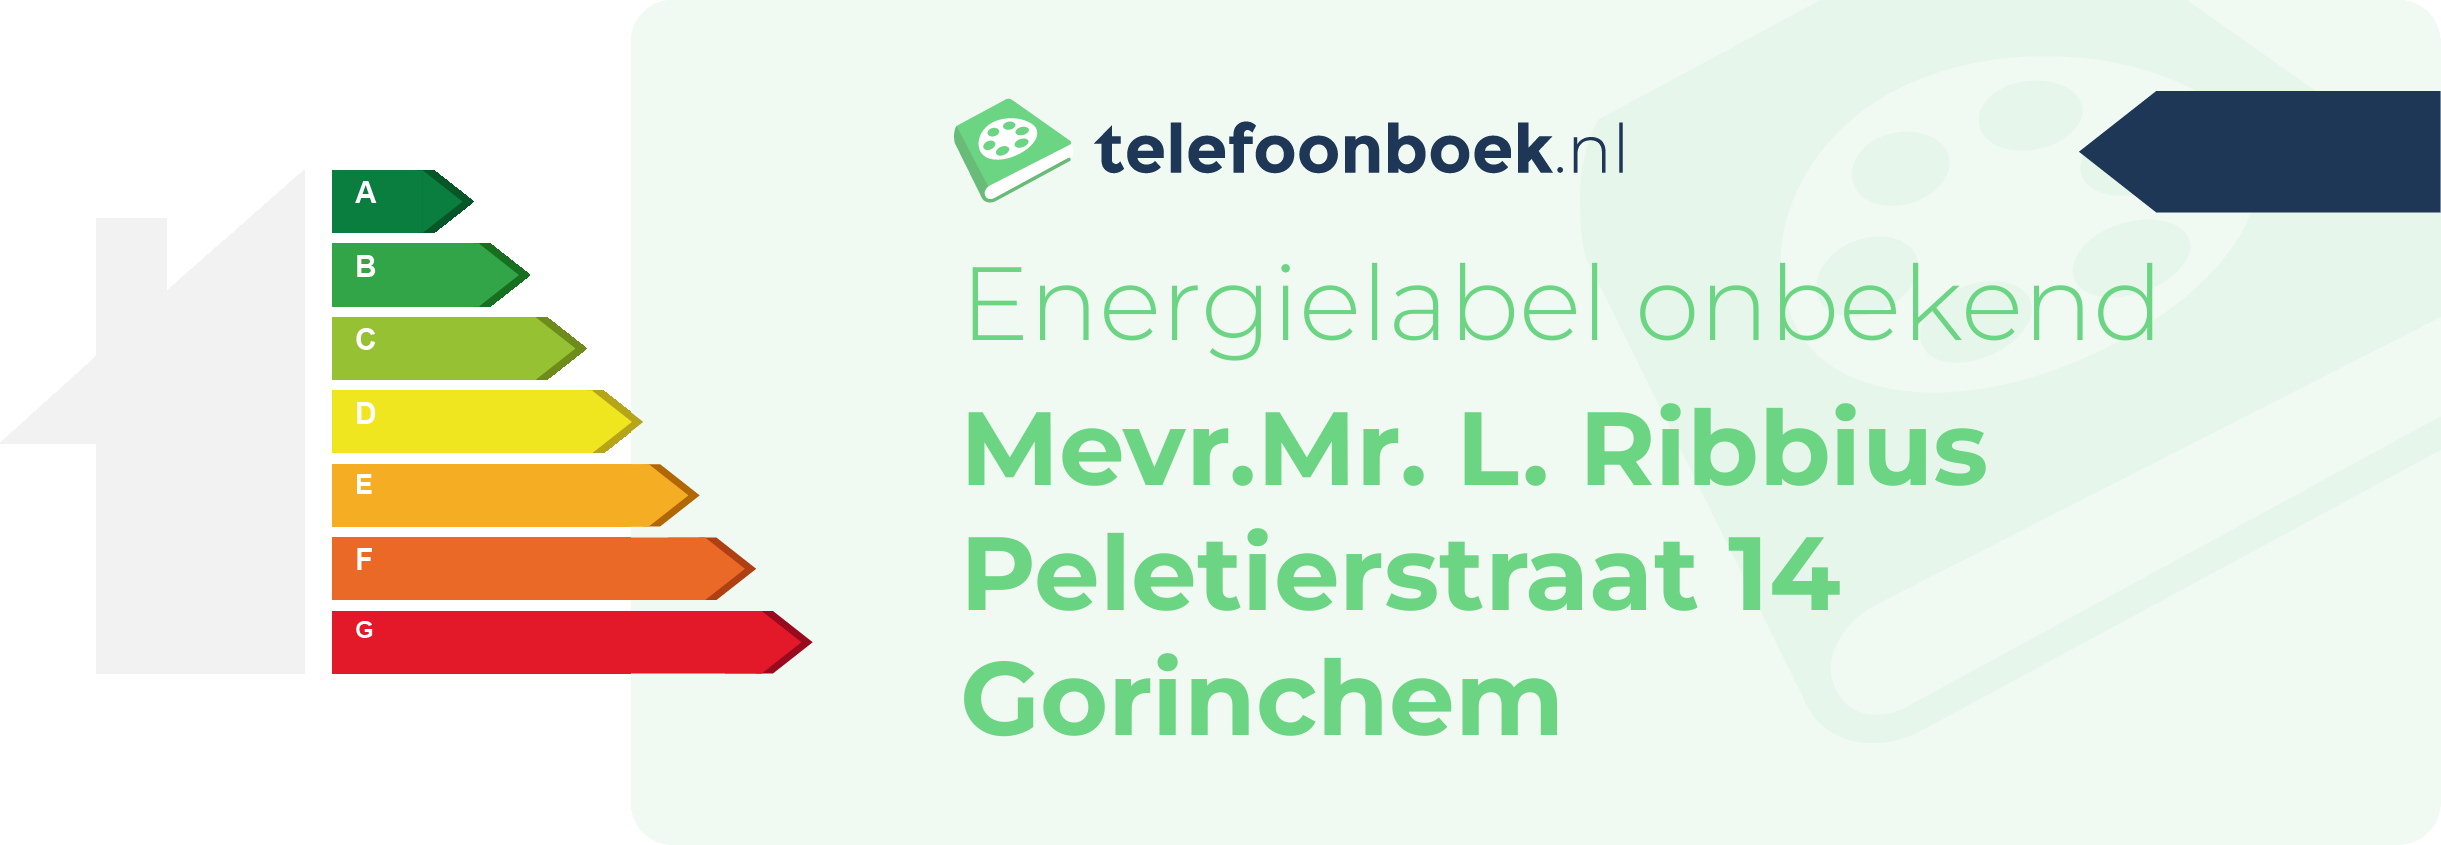 Energielabel Mevr.Mr. L. Ribbius Peletierstraat 14 Gorinchem